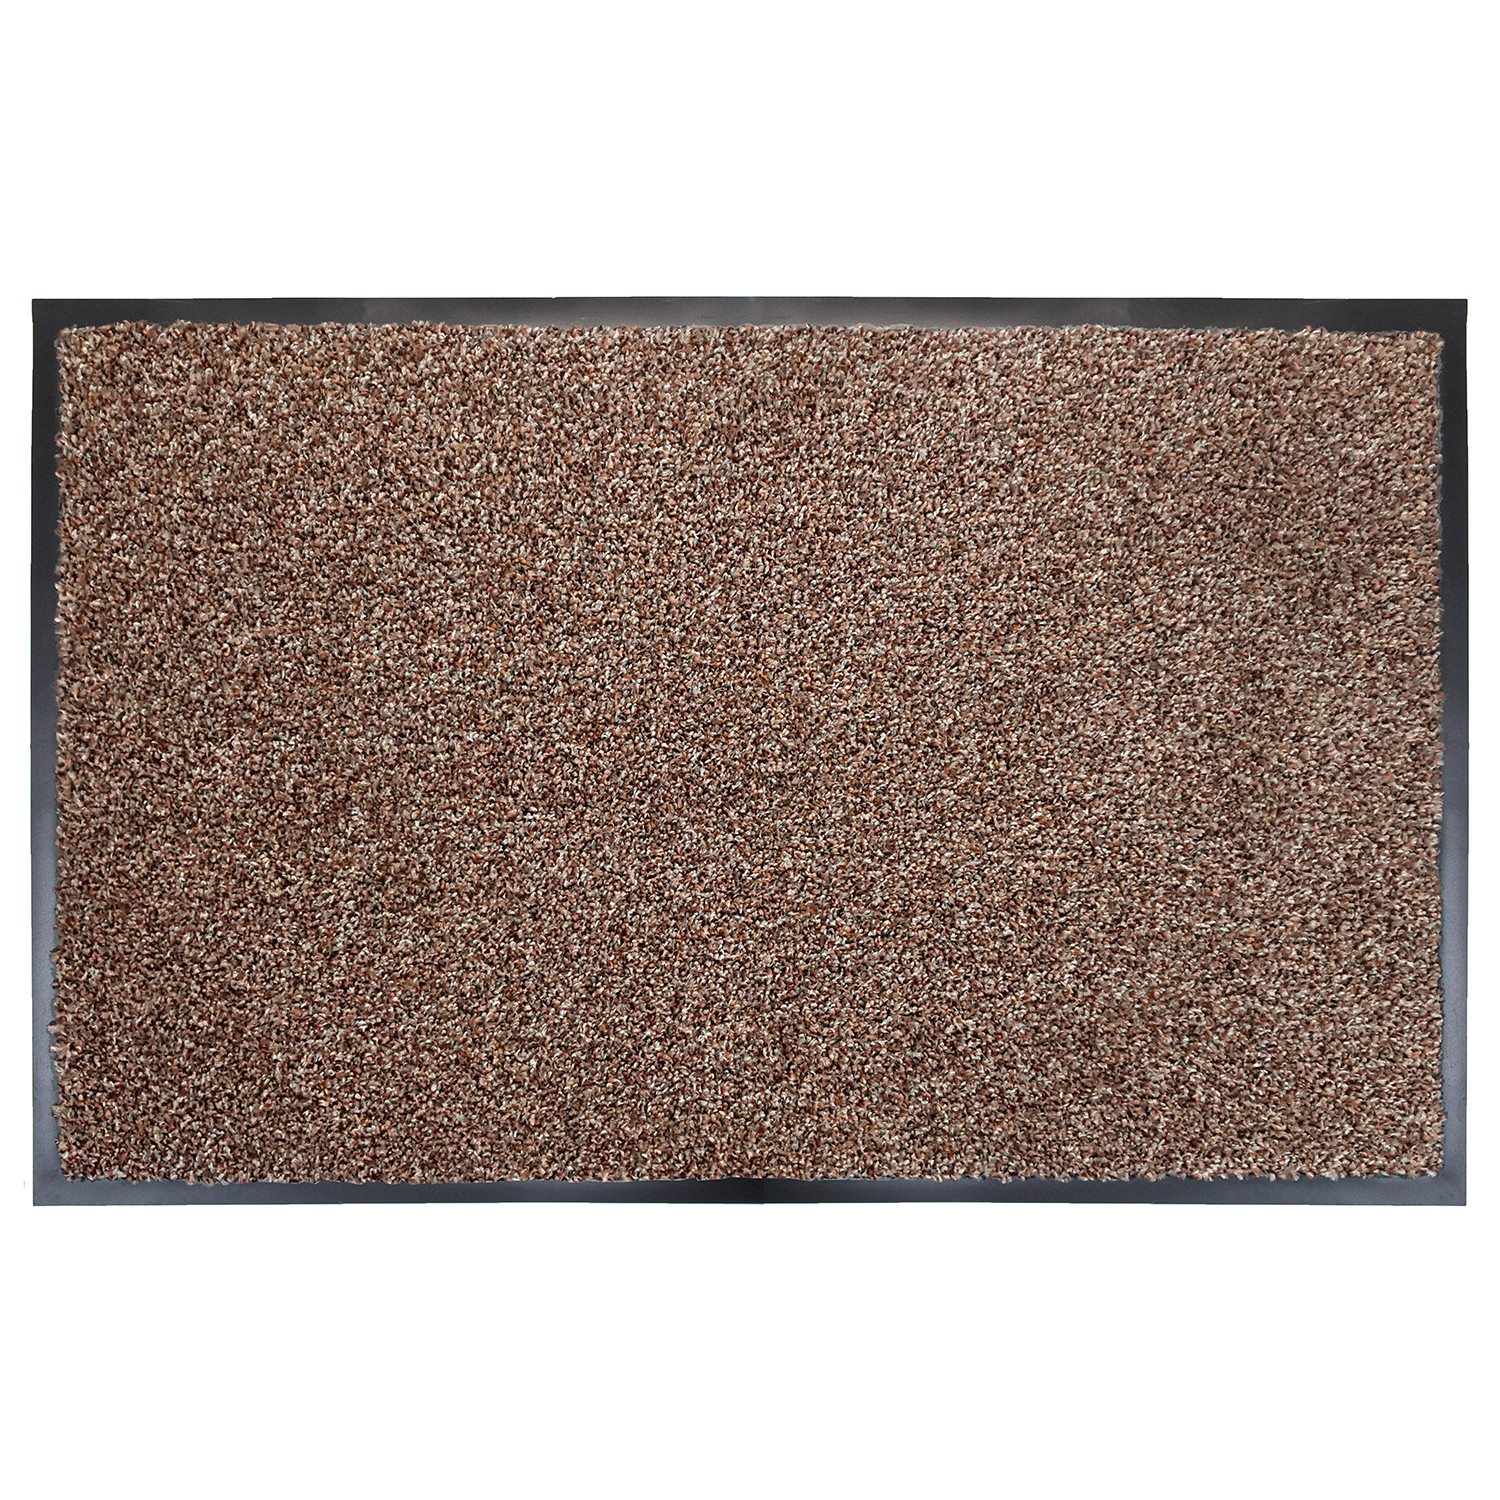 Primeur Black Barrier Doormat 60 x 40cm Image 2